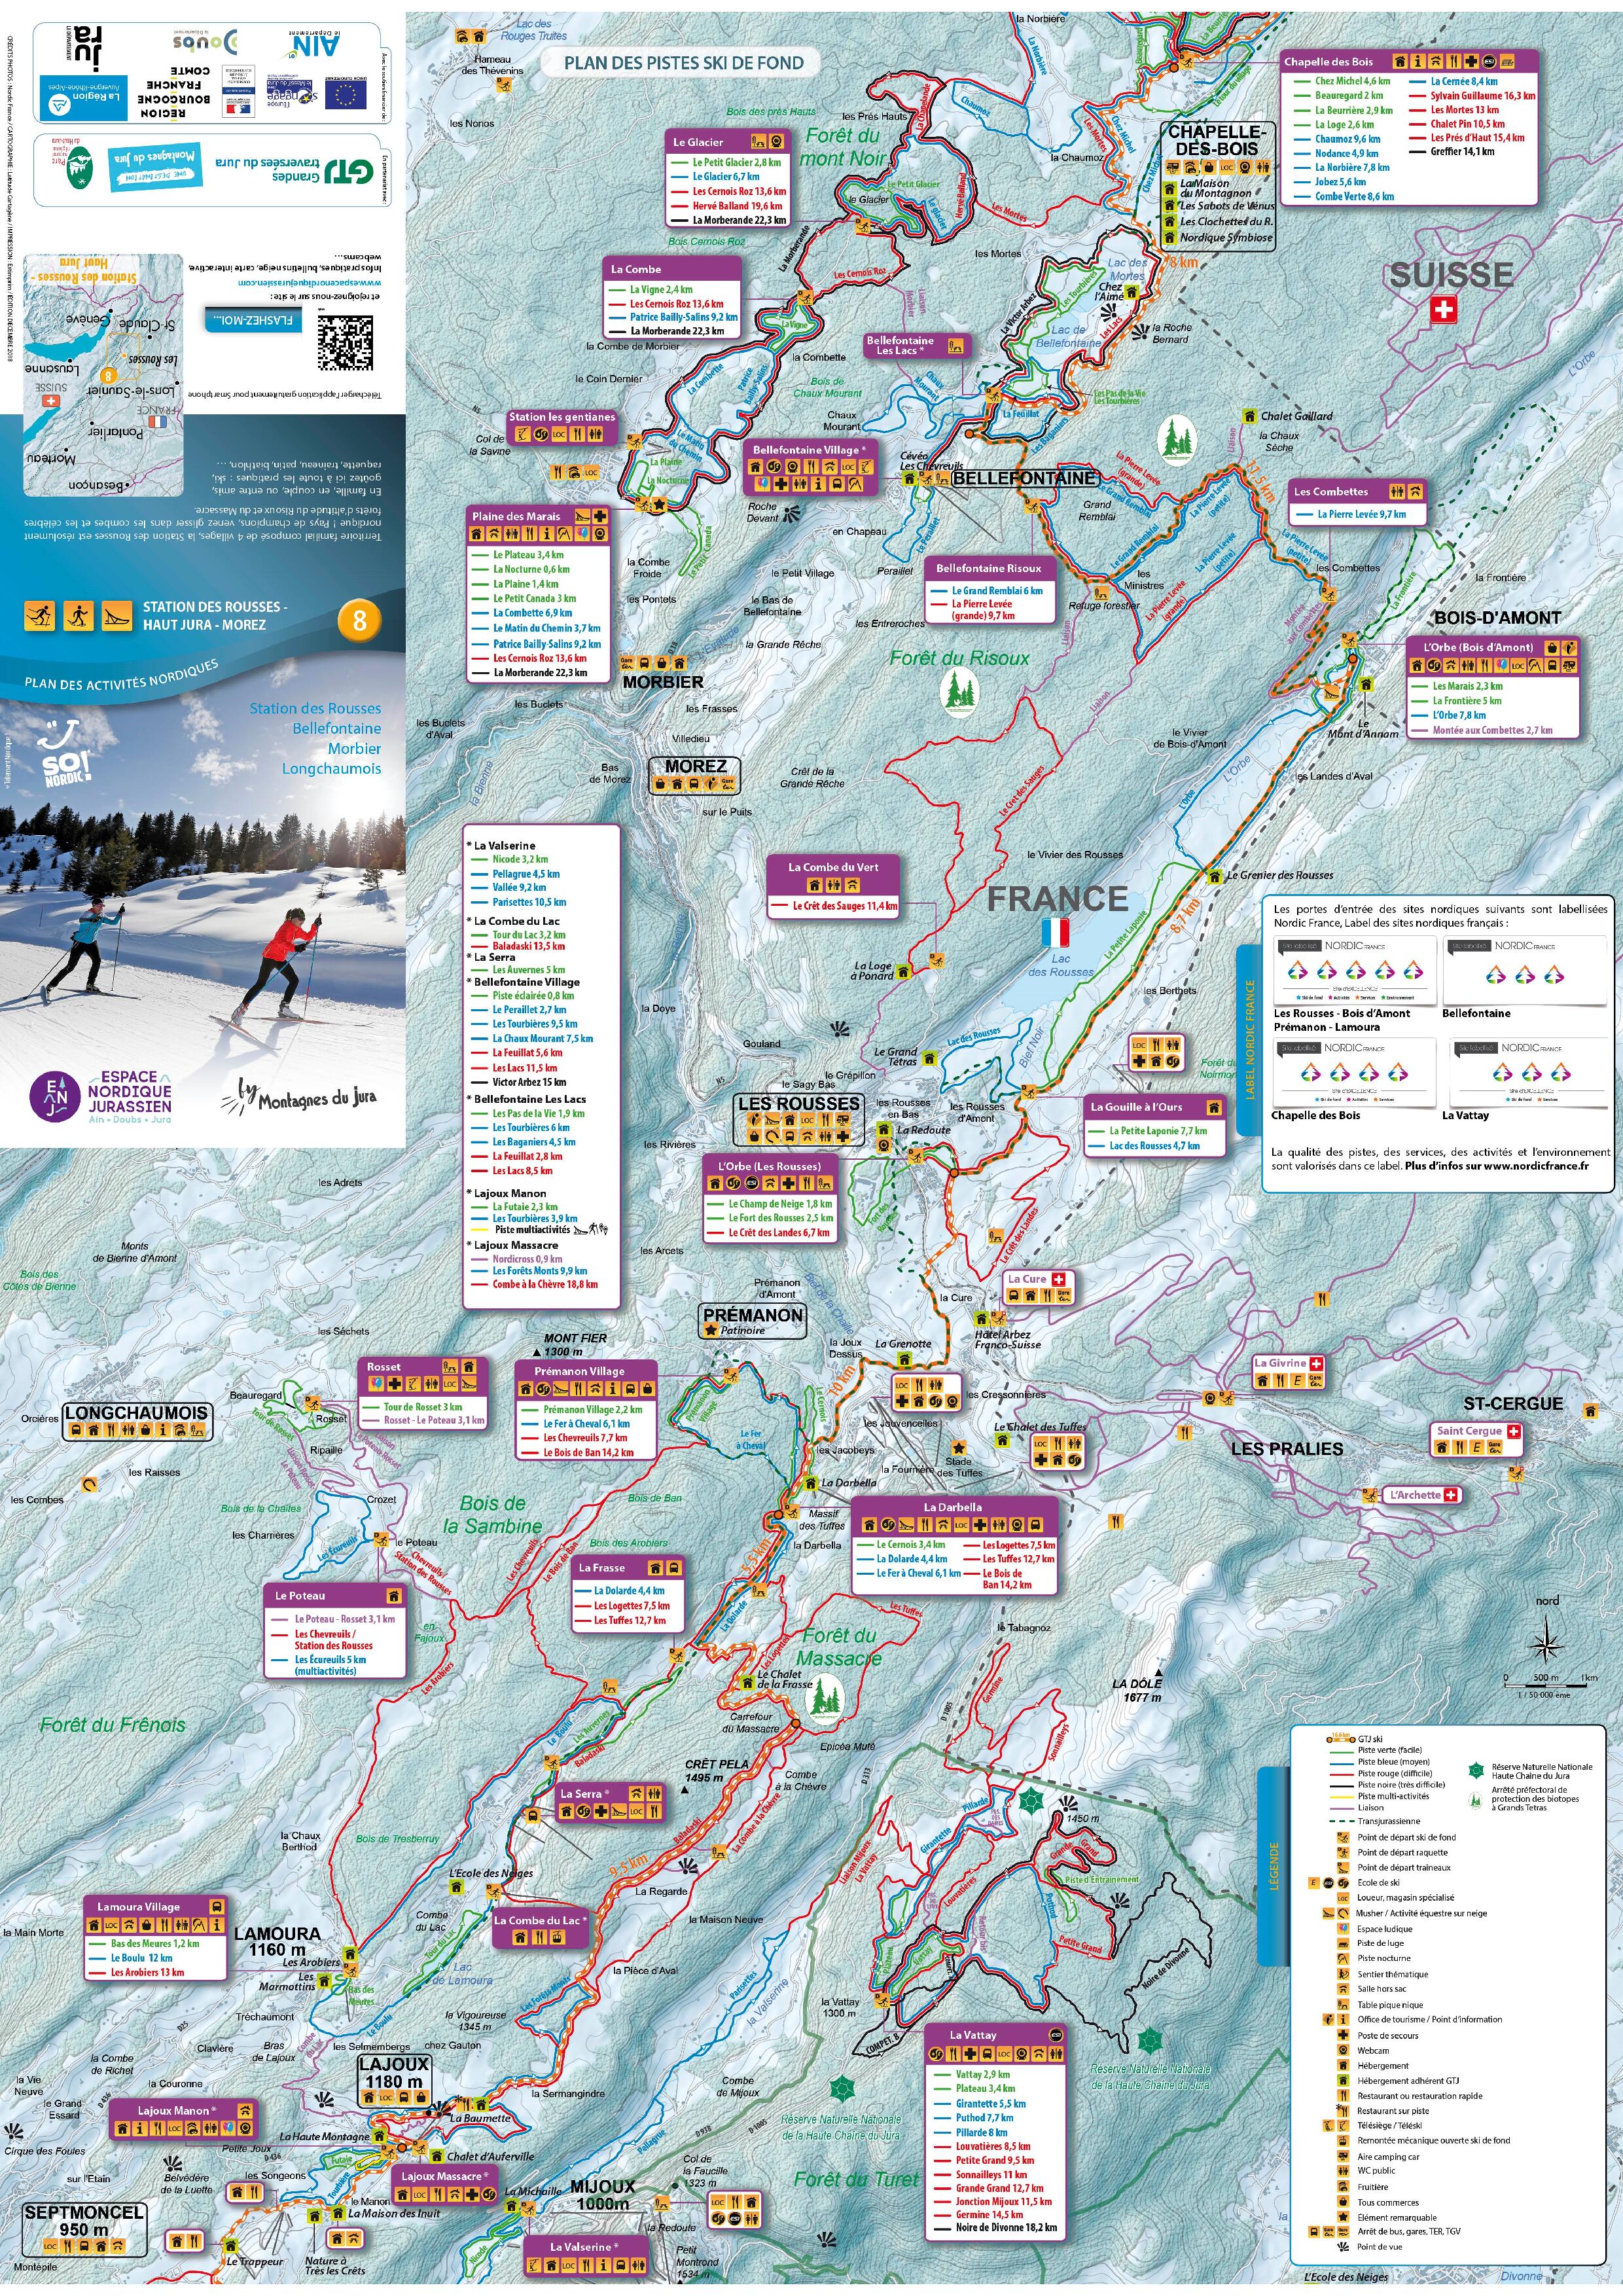 Plan de pistes ski de fond Station des Rousses